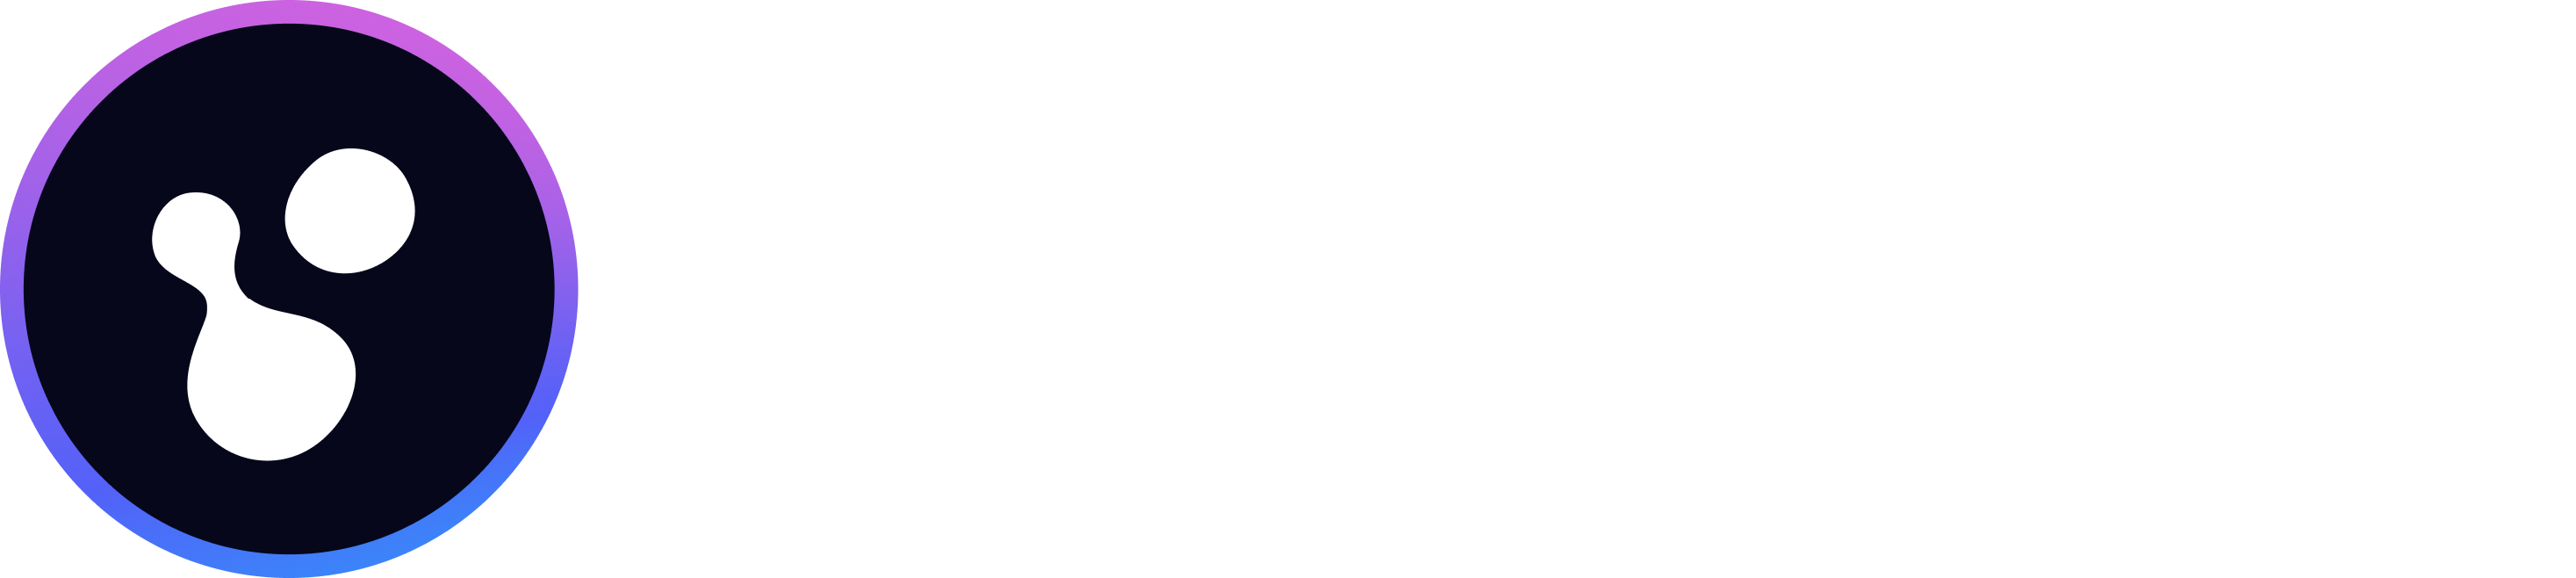 Polywrap Icon